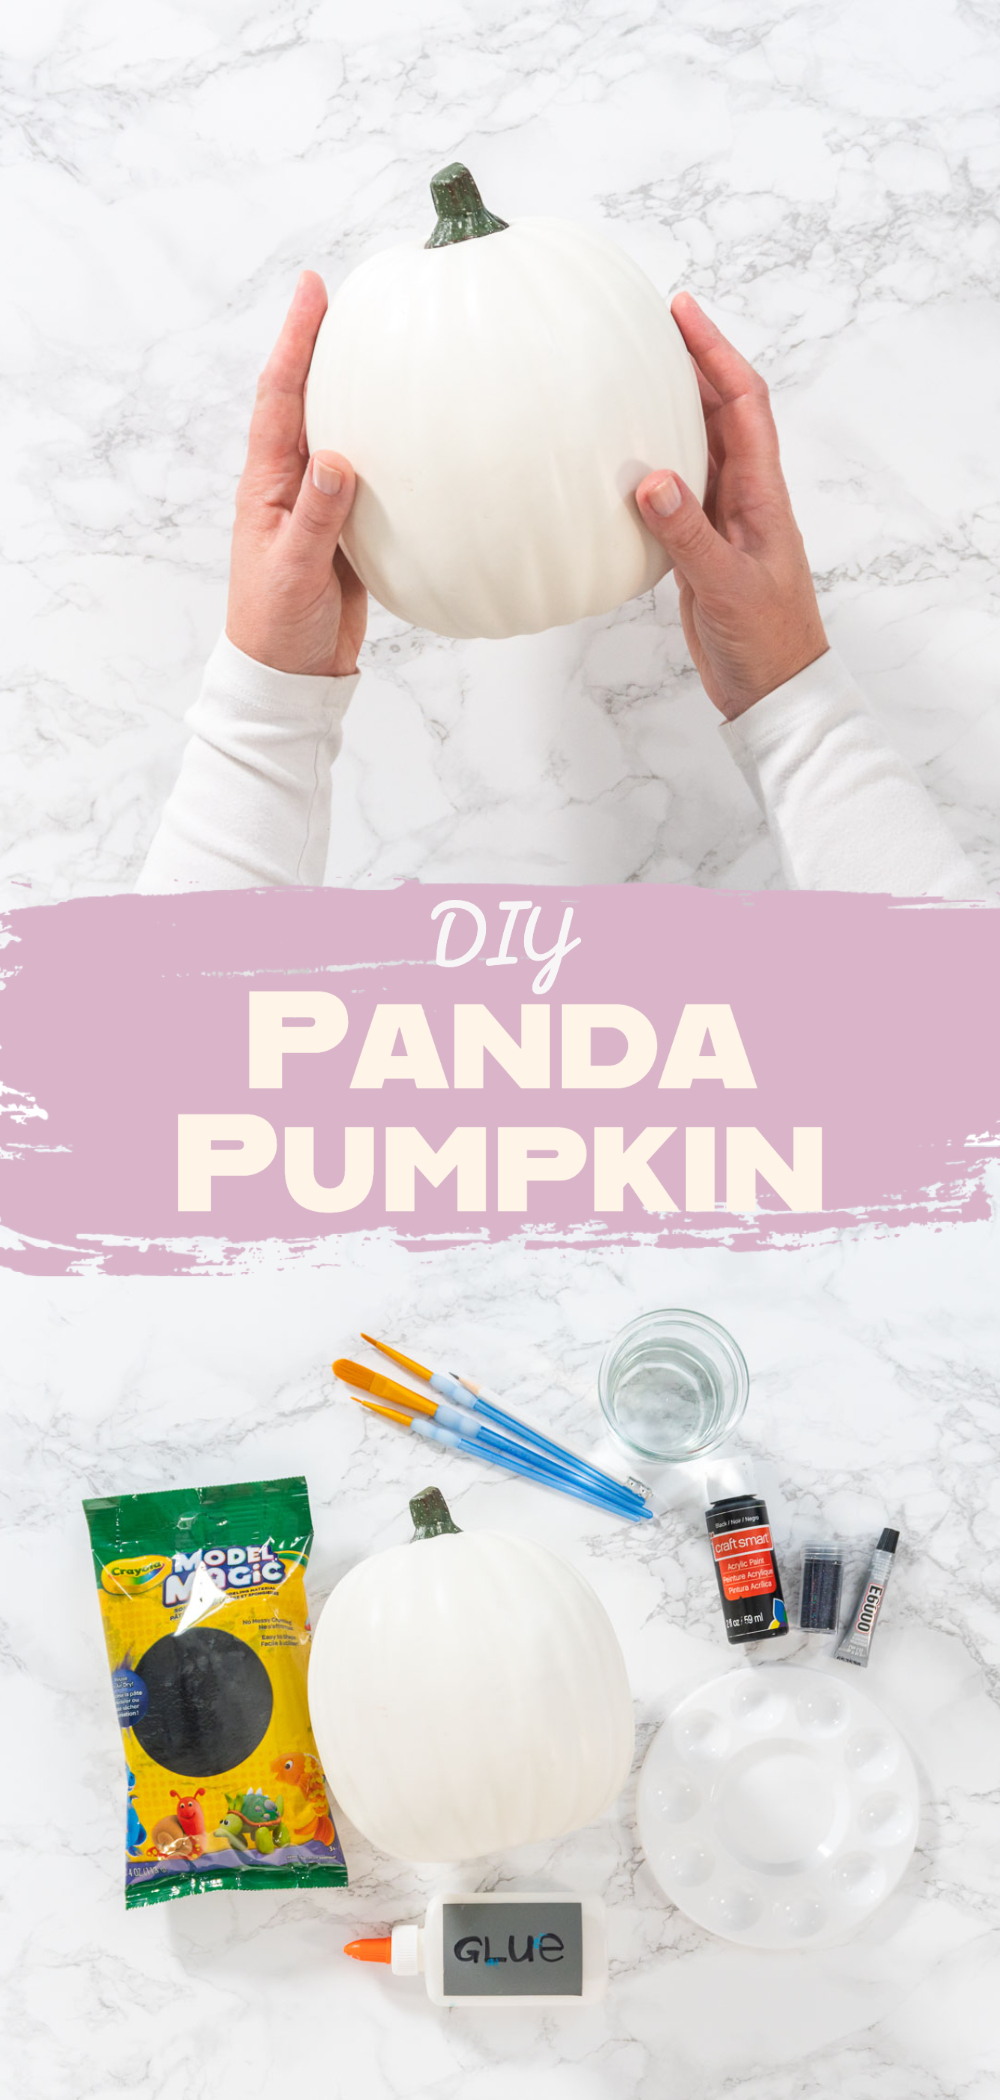 DIY Panda Pumpkin